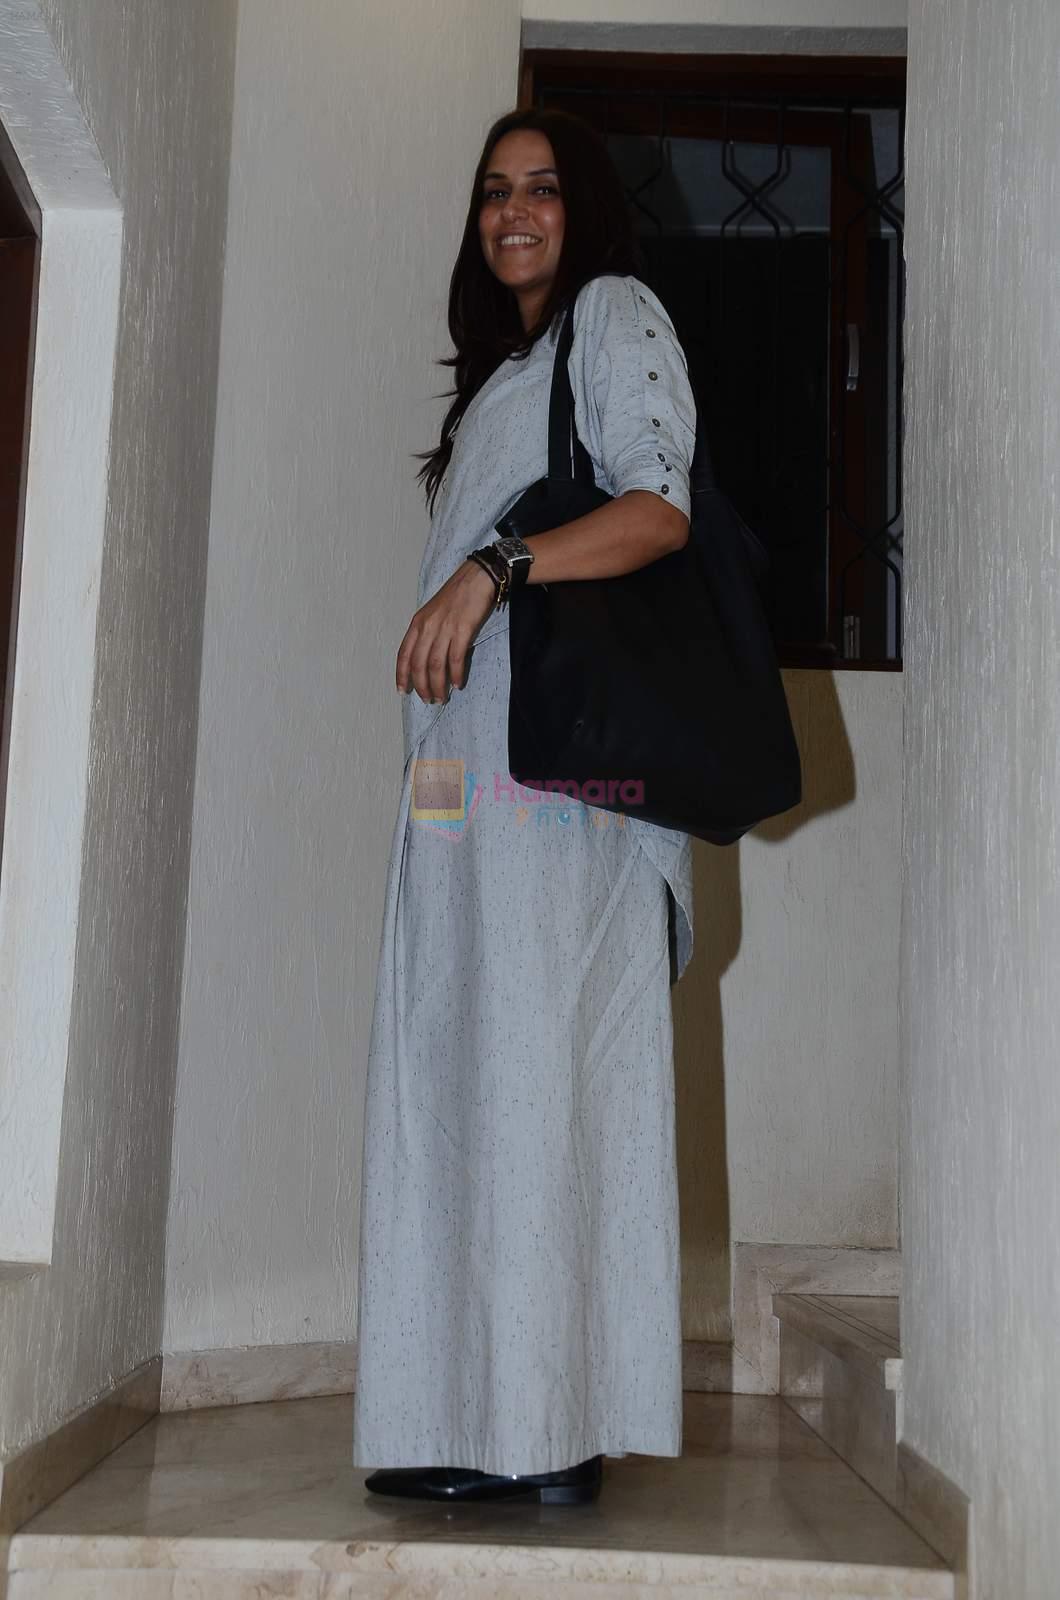 Neha Dhupia at Guddu Ki Gun screening in Sunny Super Sound on 26th Oct 2015